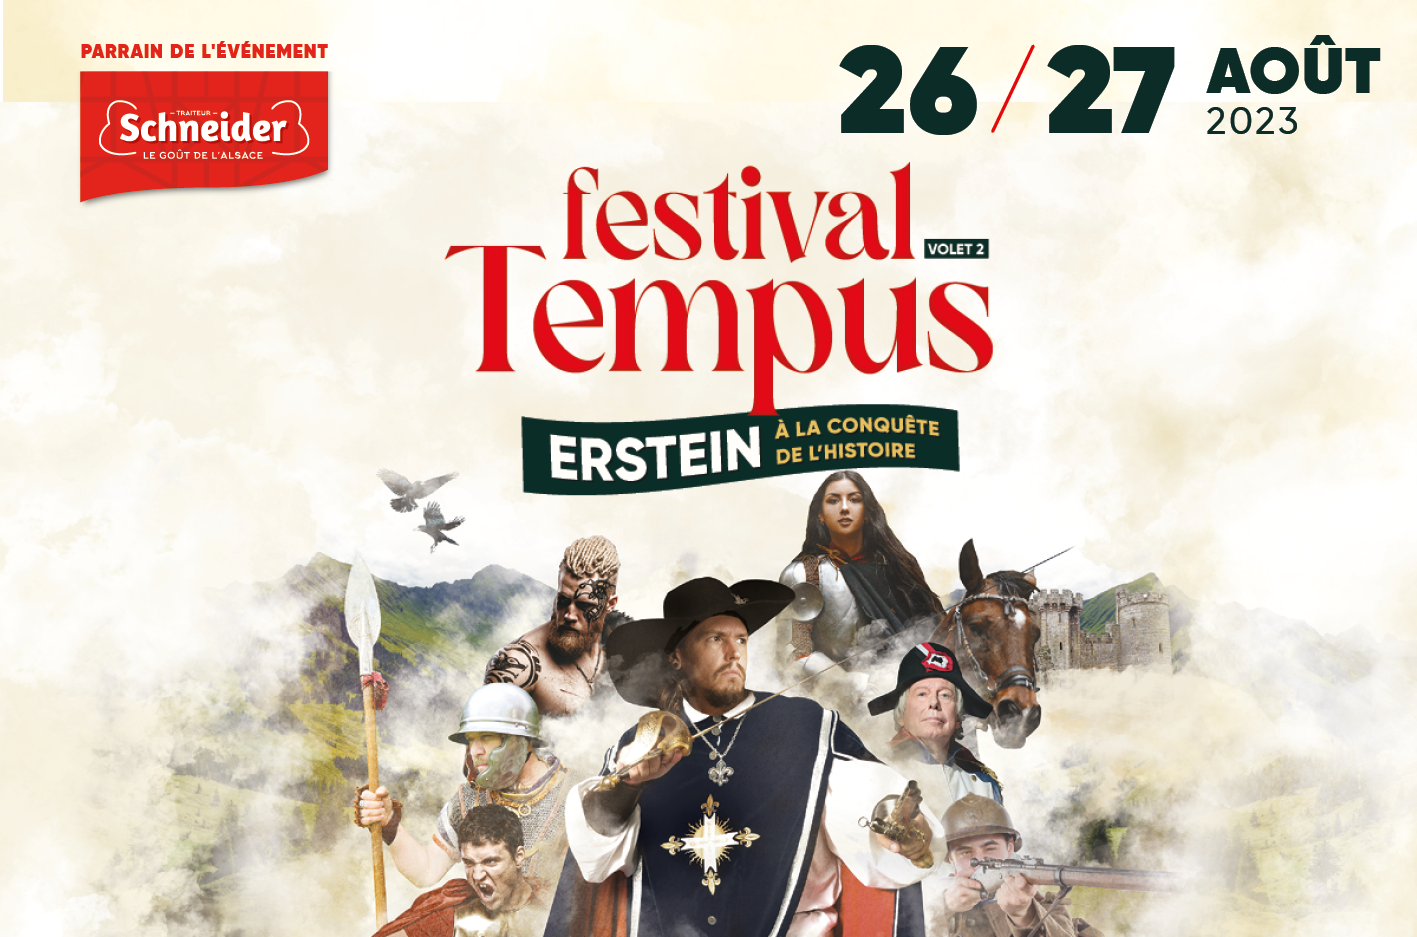 Traiteur Schneider parraine le volet #2 du Festival Tempus à Erstein